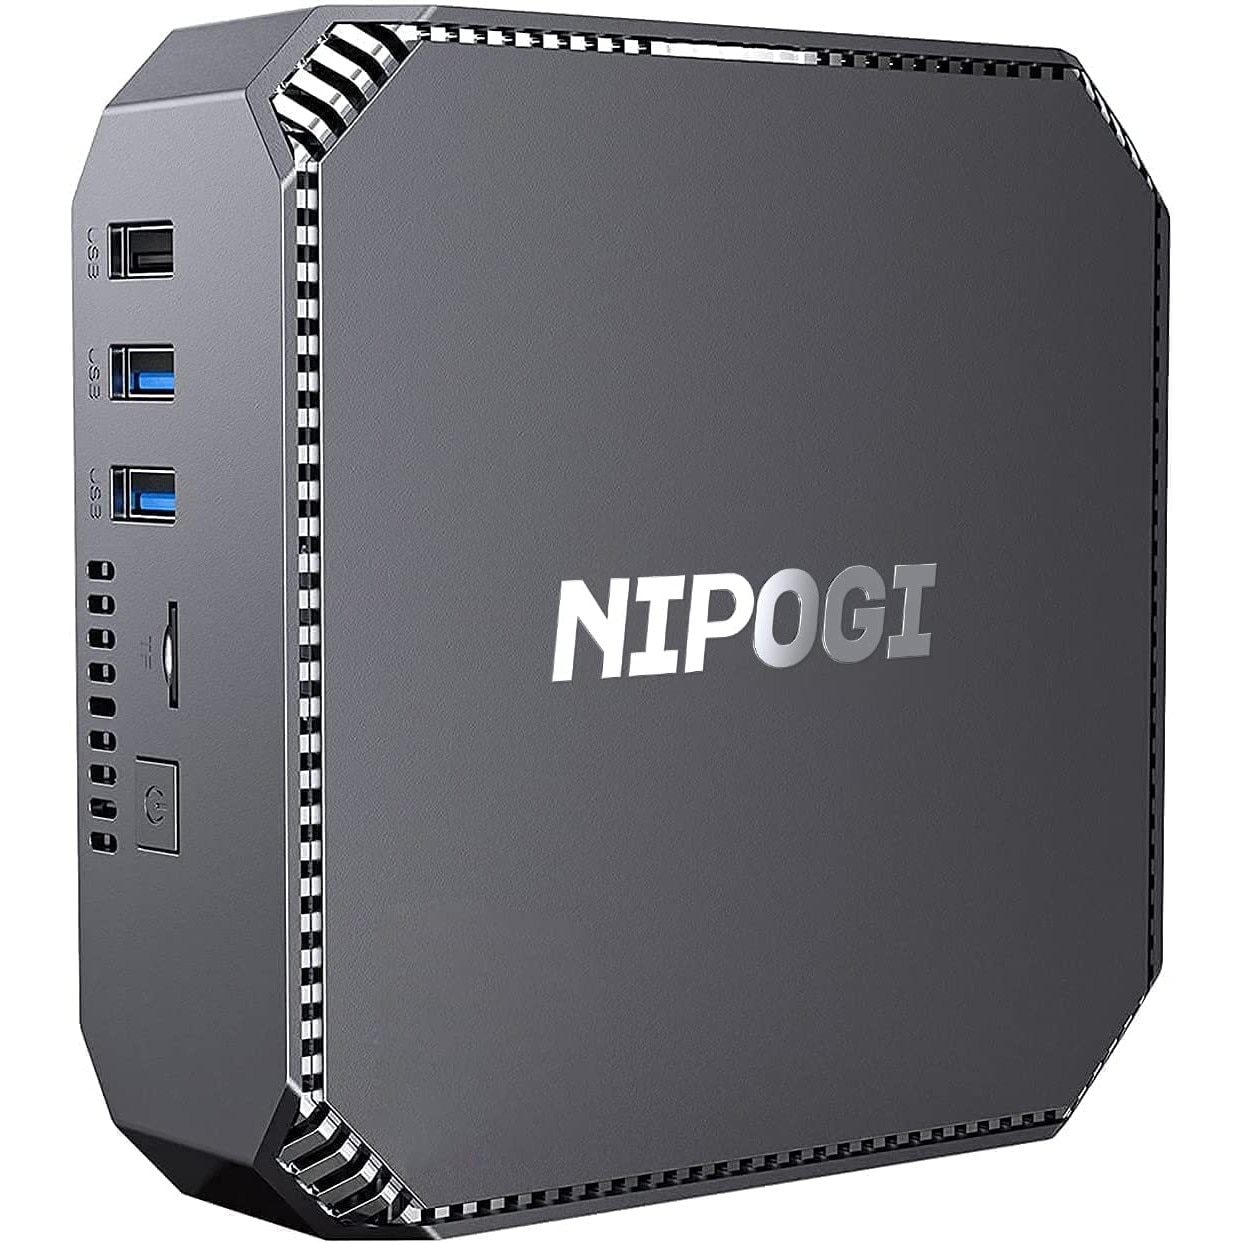 NIPOGI MINI PC,12TH N100 Mini Computer (up to 3.4 GHz ,16GB RAM